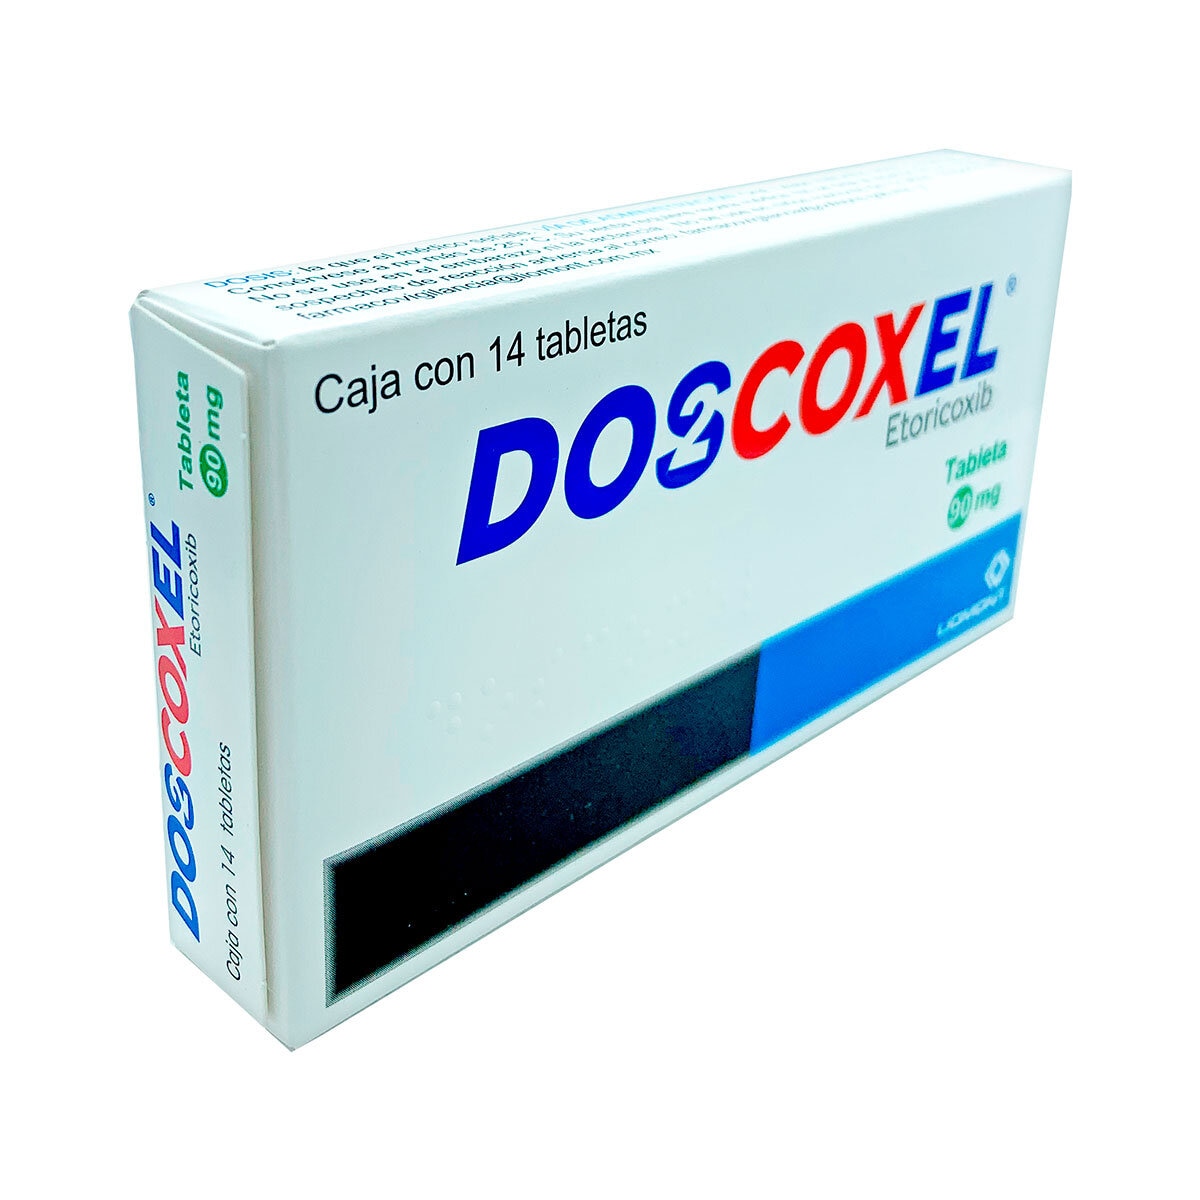 Doscoxel 90 mg 14 Tabletas